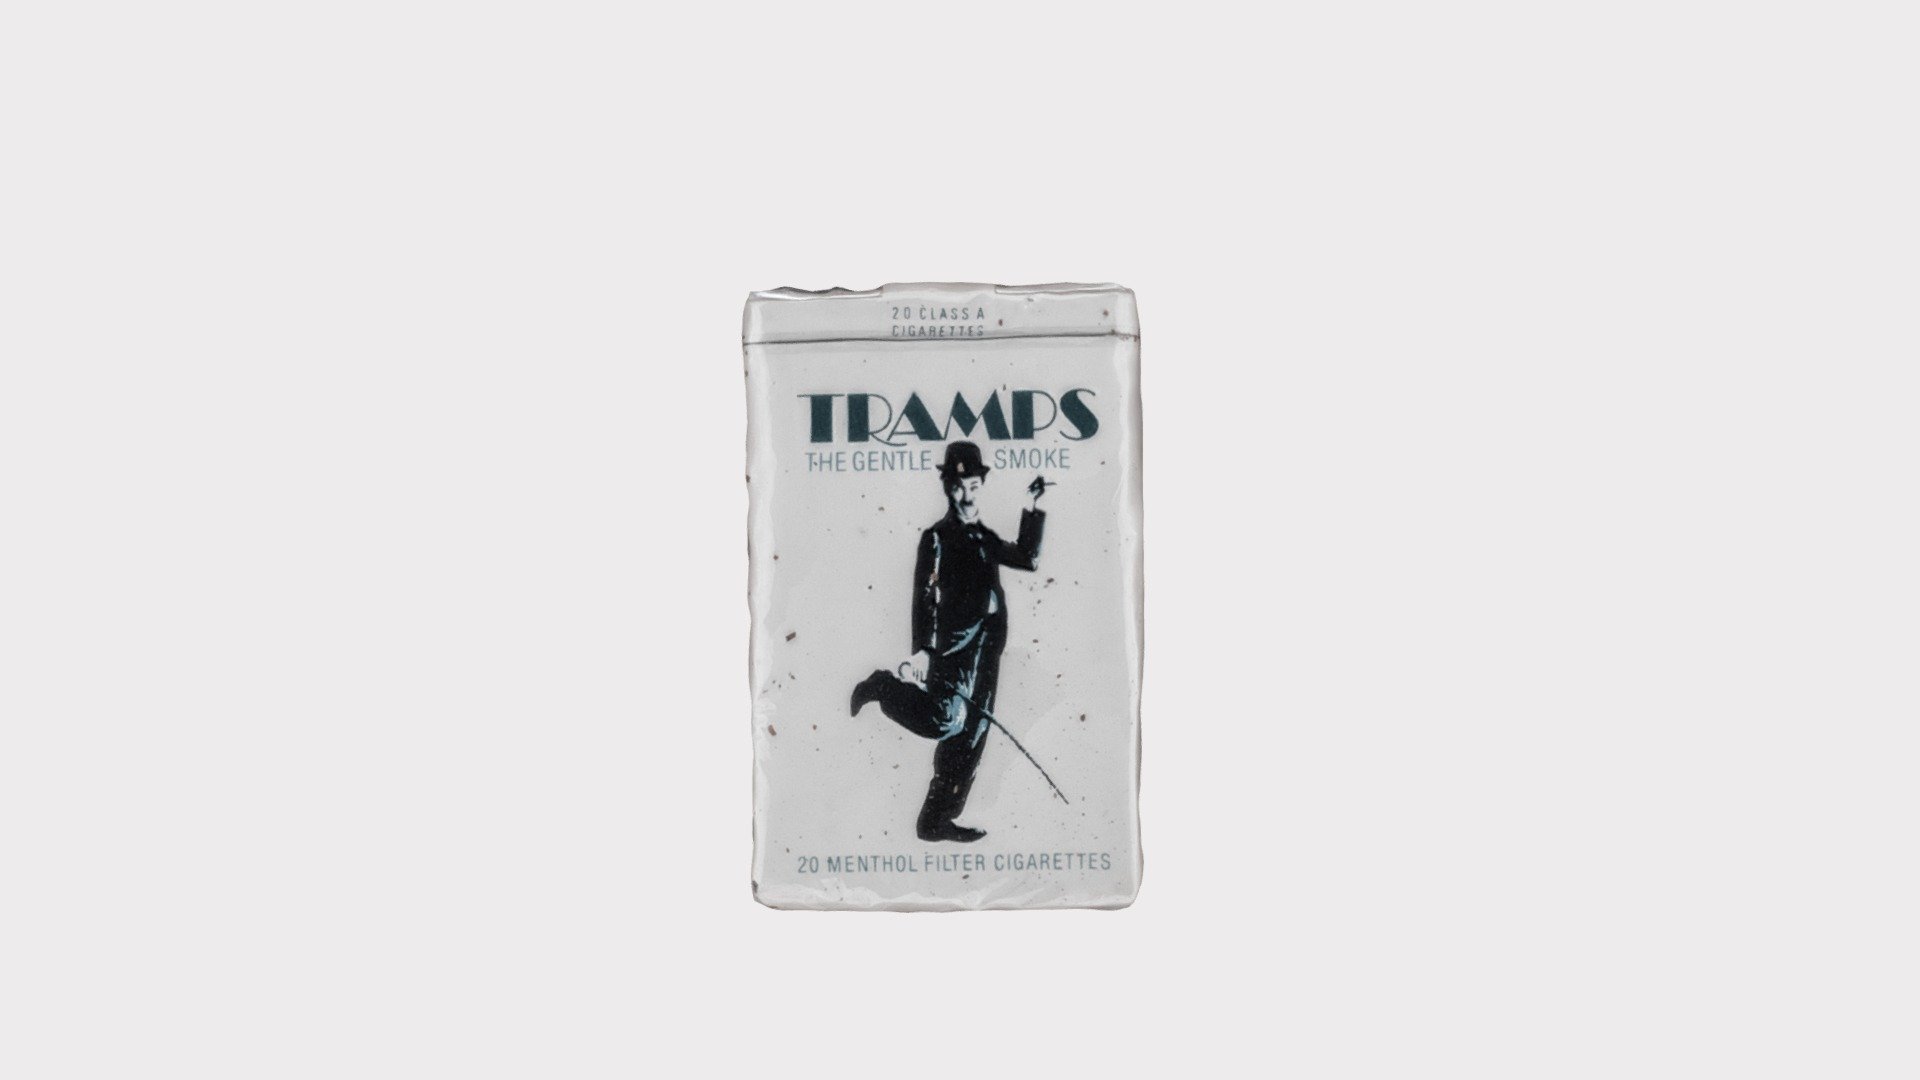 Tramps Cigarettes